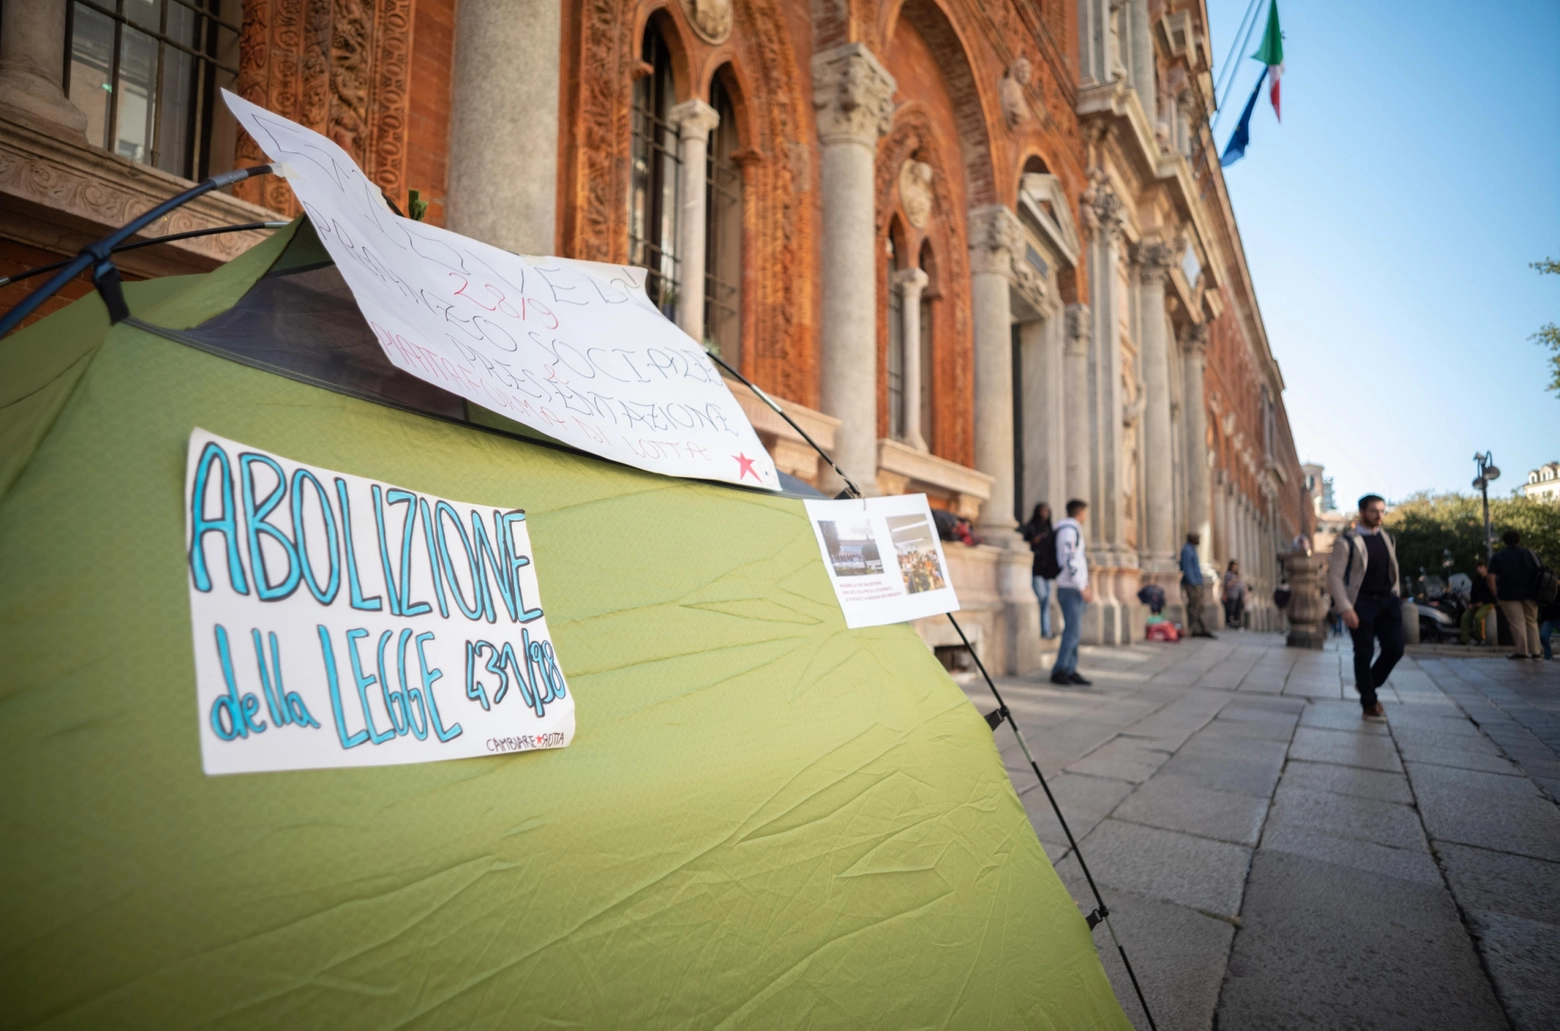 Tende del movimento studentesco “Cambiare rotta” davanti all’Università Statale di Milano contro il caro vita e il governo